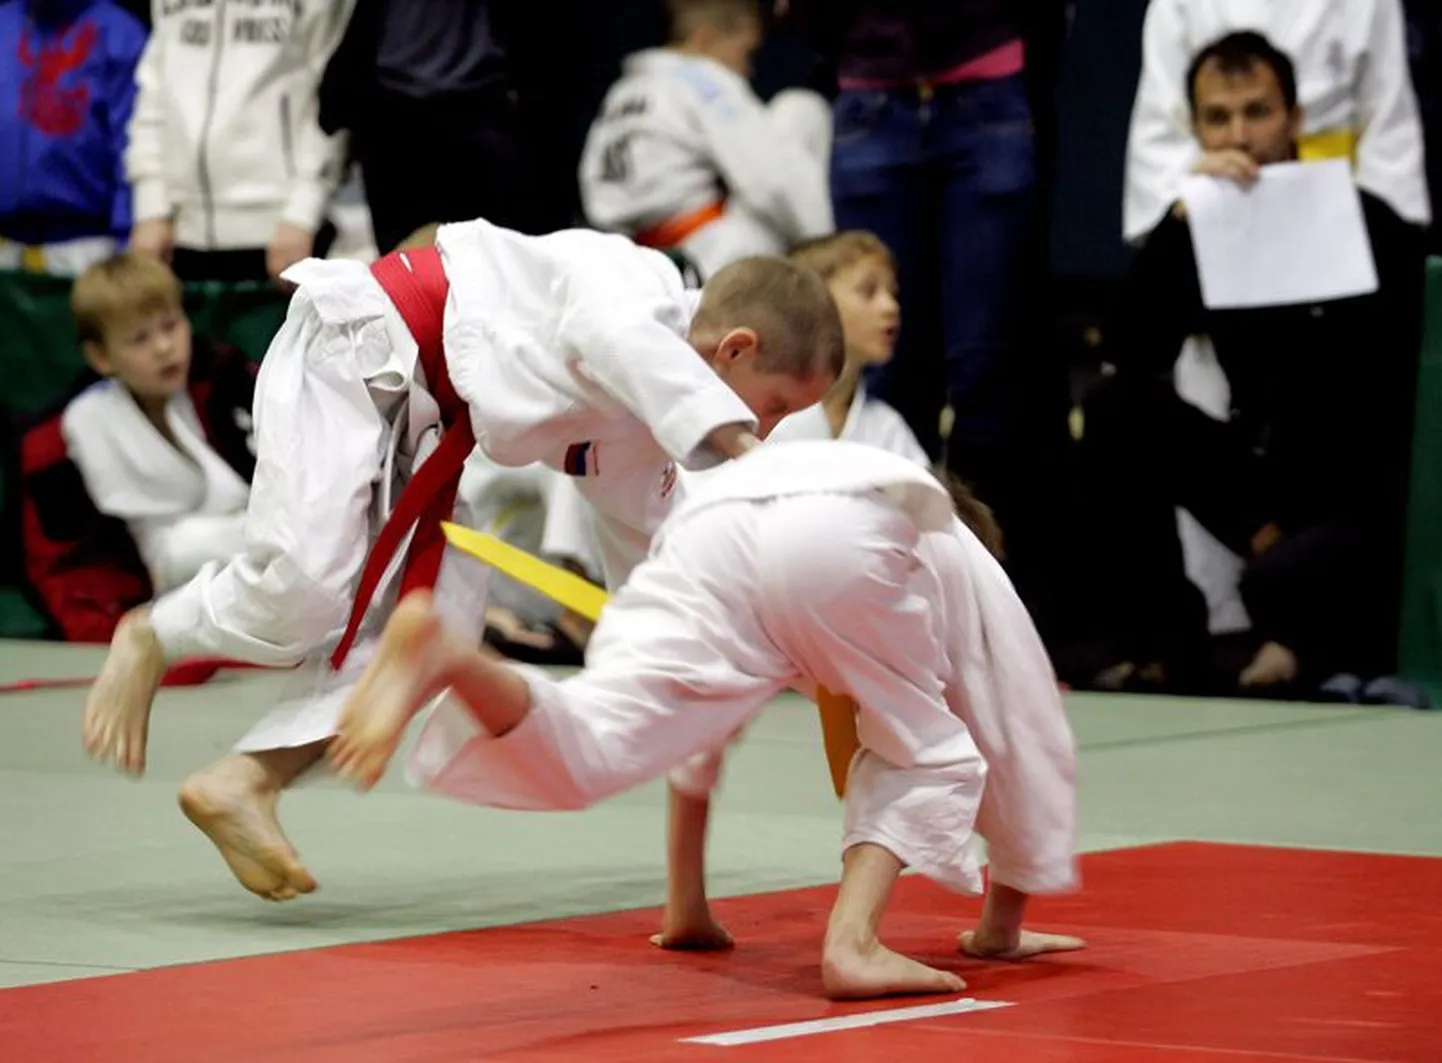 Laupäeval kell 12 algab Rakvere spordihoones laste judoturniir Rakvere Open, kus võtavad üksteisega mõõtu aastatel 2003–2005 sündinud poisid ja tüdrukud.